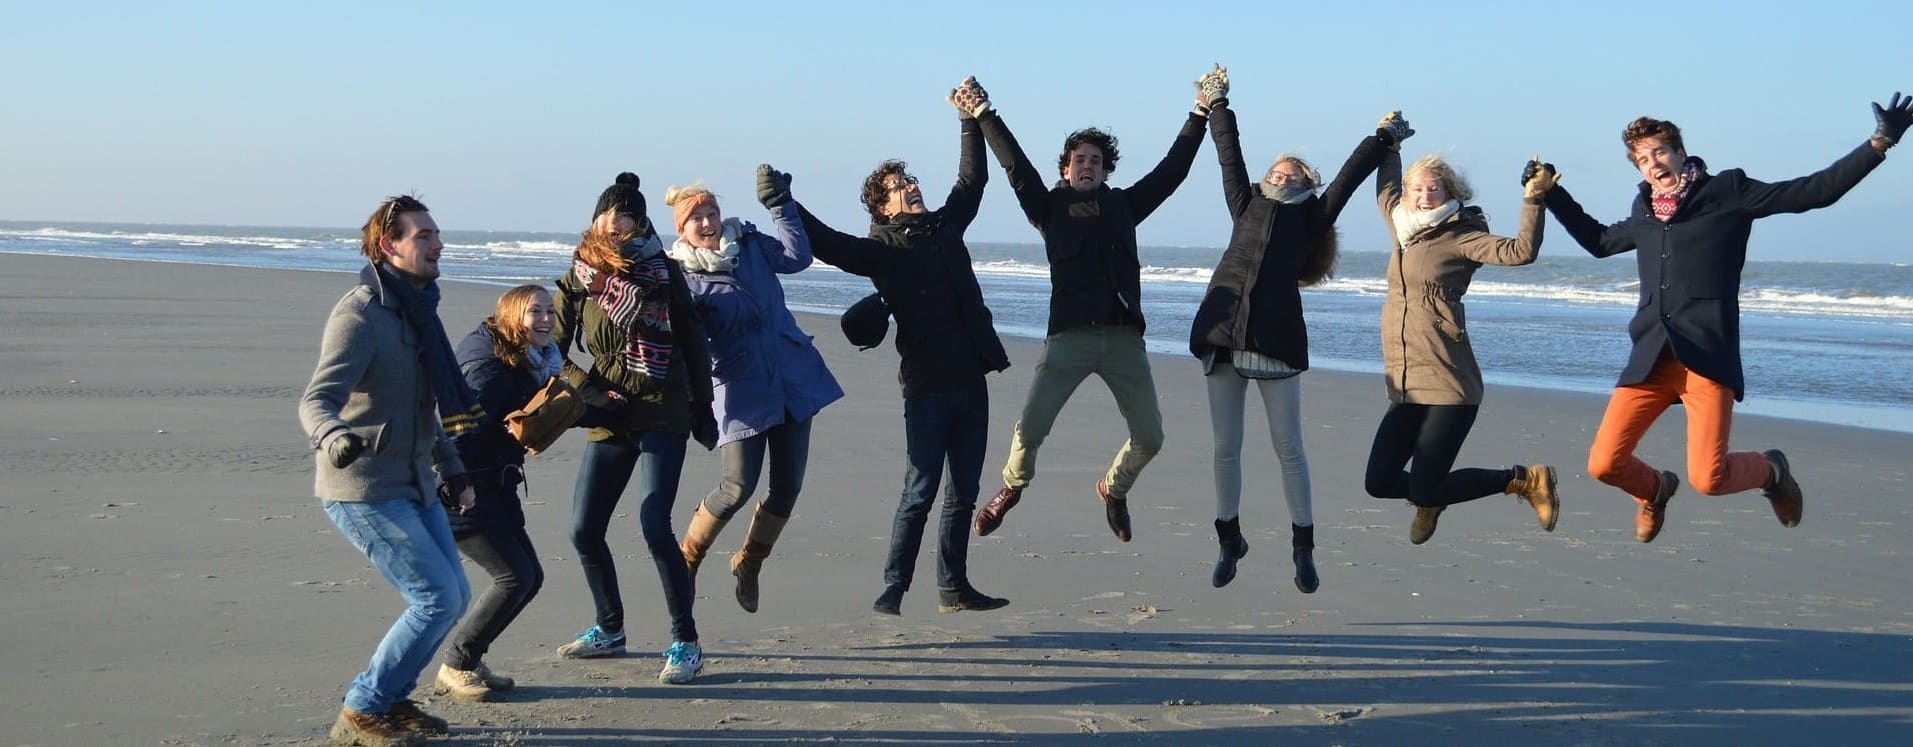 Groupe de personnes heureux sur la plage